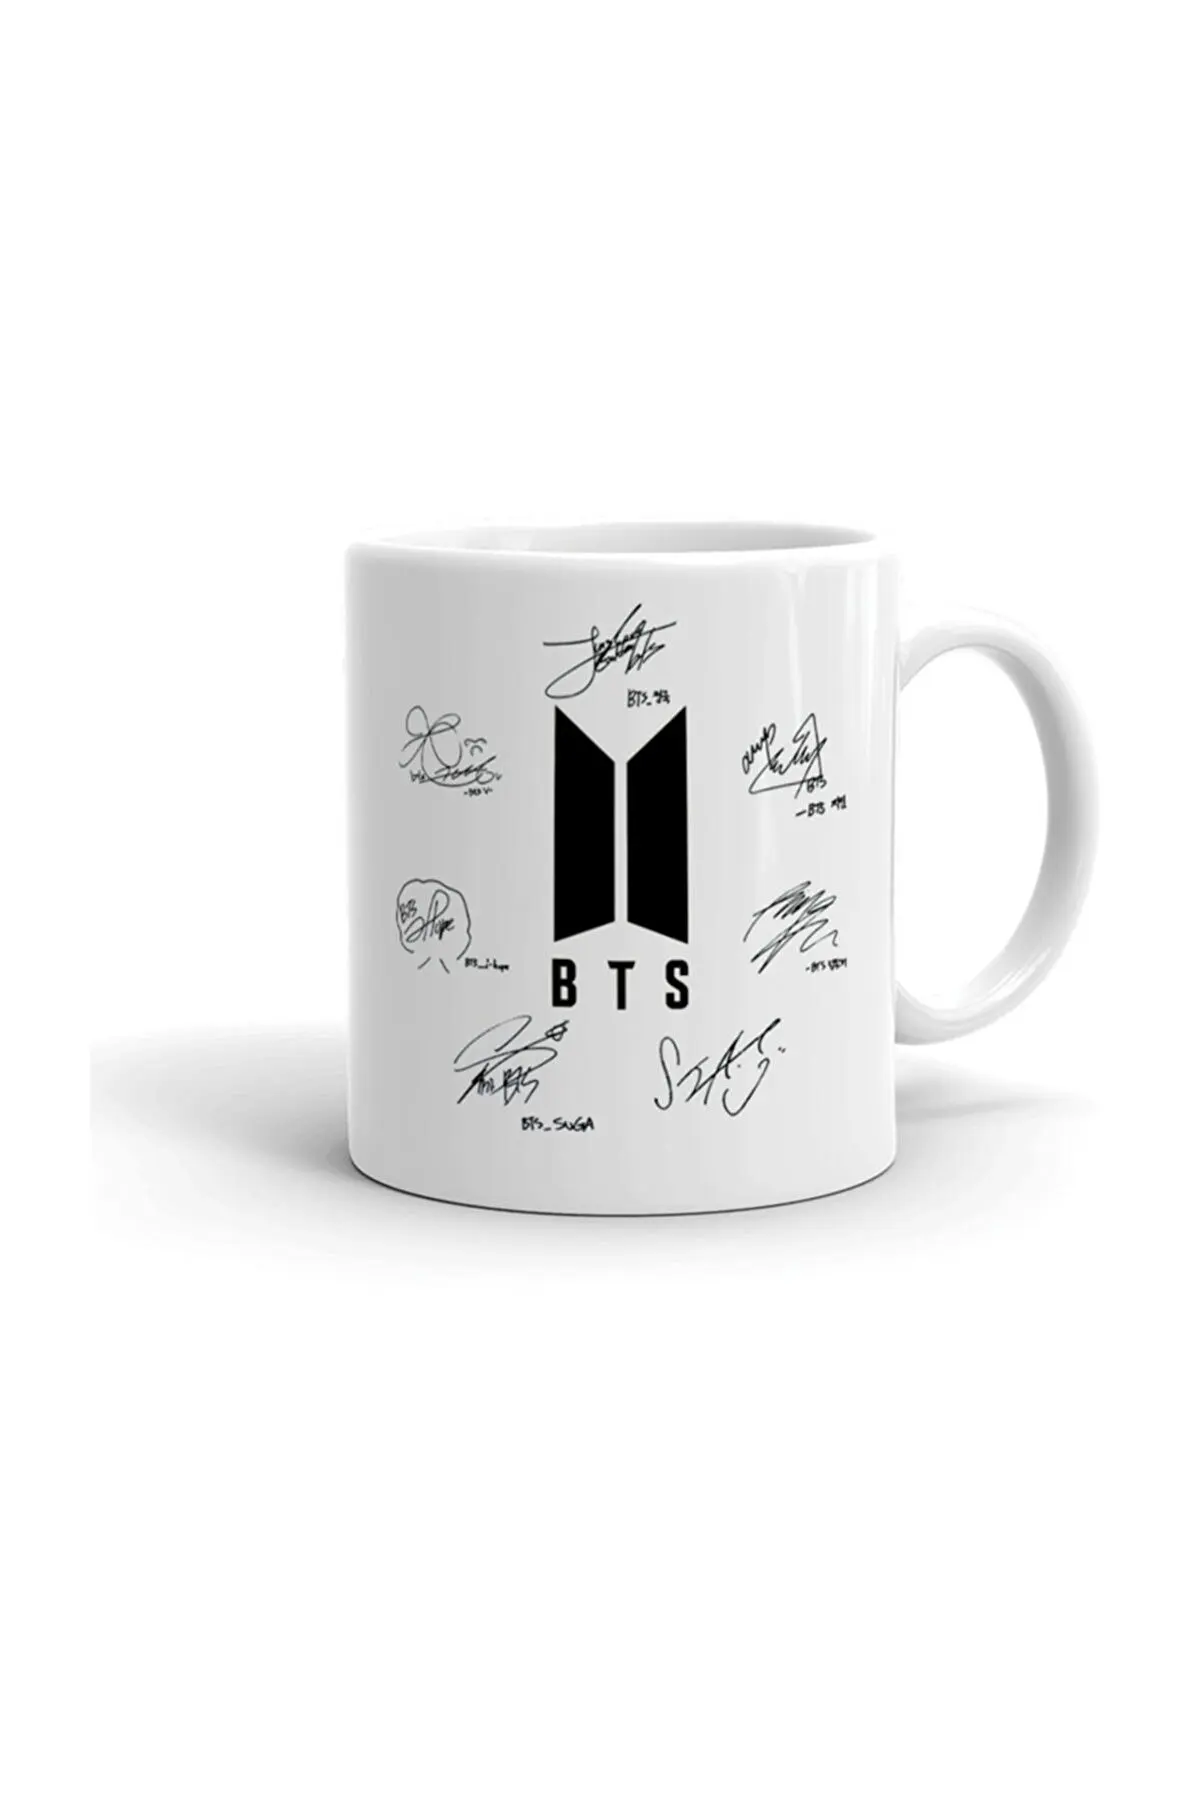 Los miembros de BTS han firmado la taza de porcelana blanca 2022 k-pop, el logotipo del grupo de música coreana es un regalo.